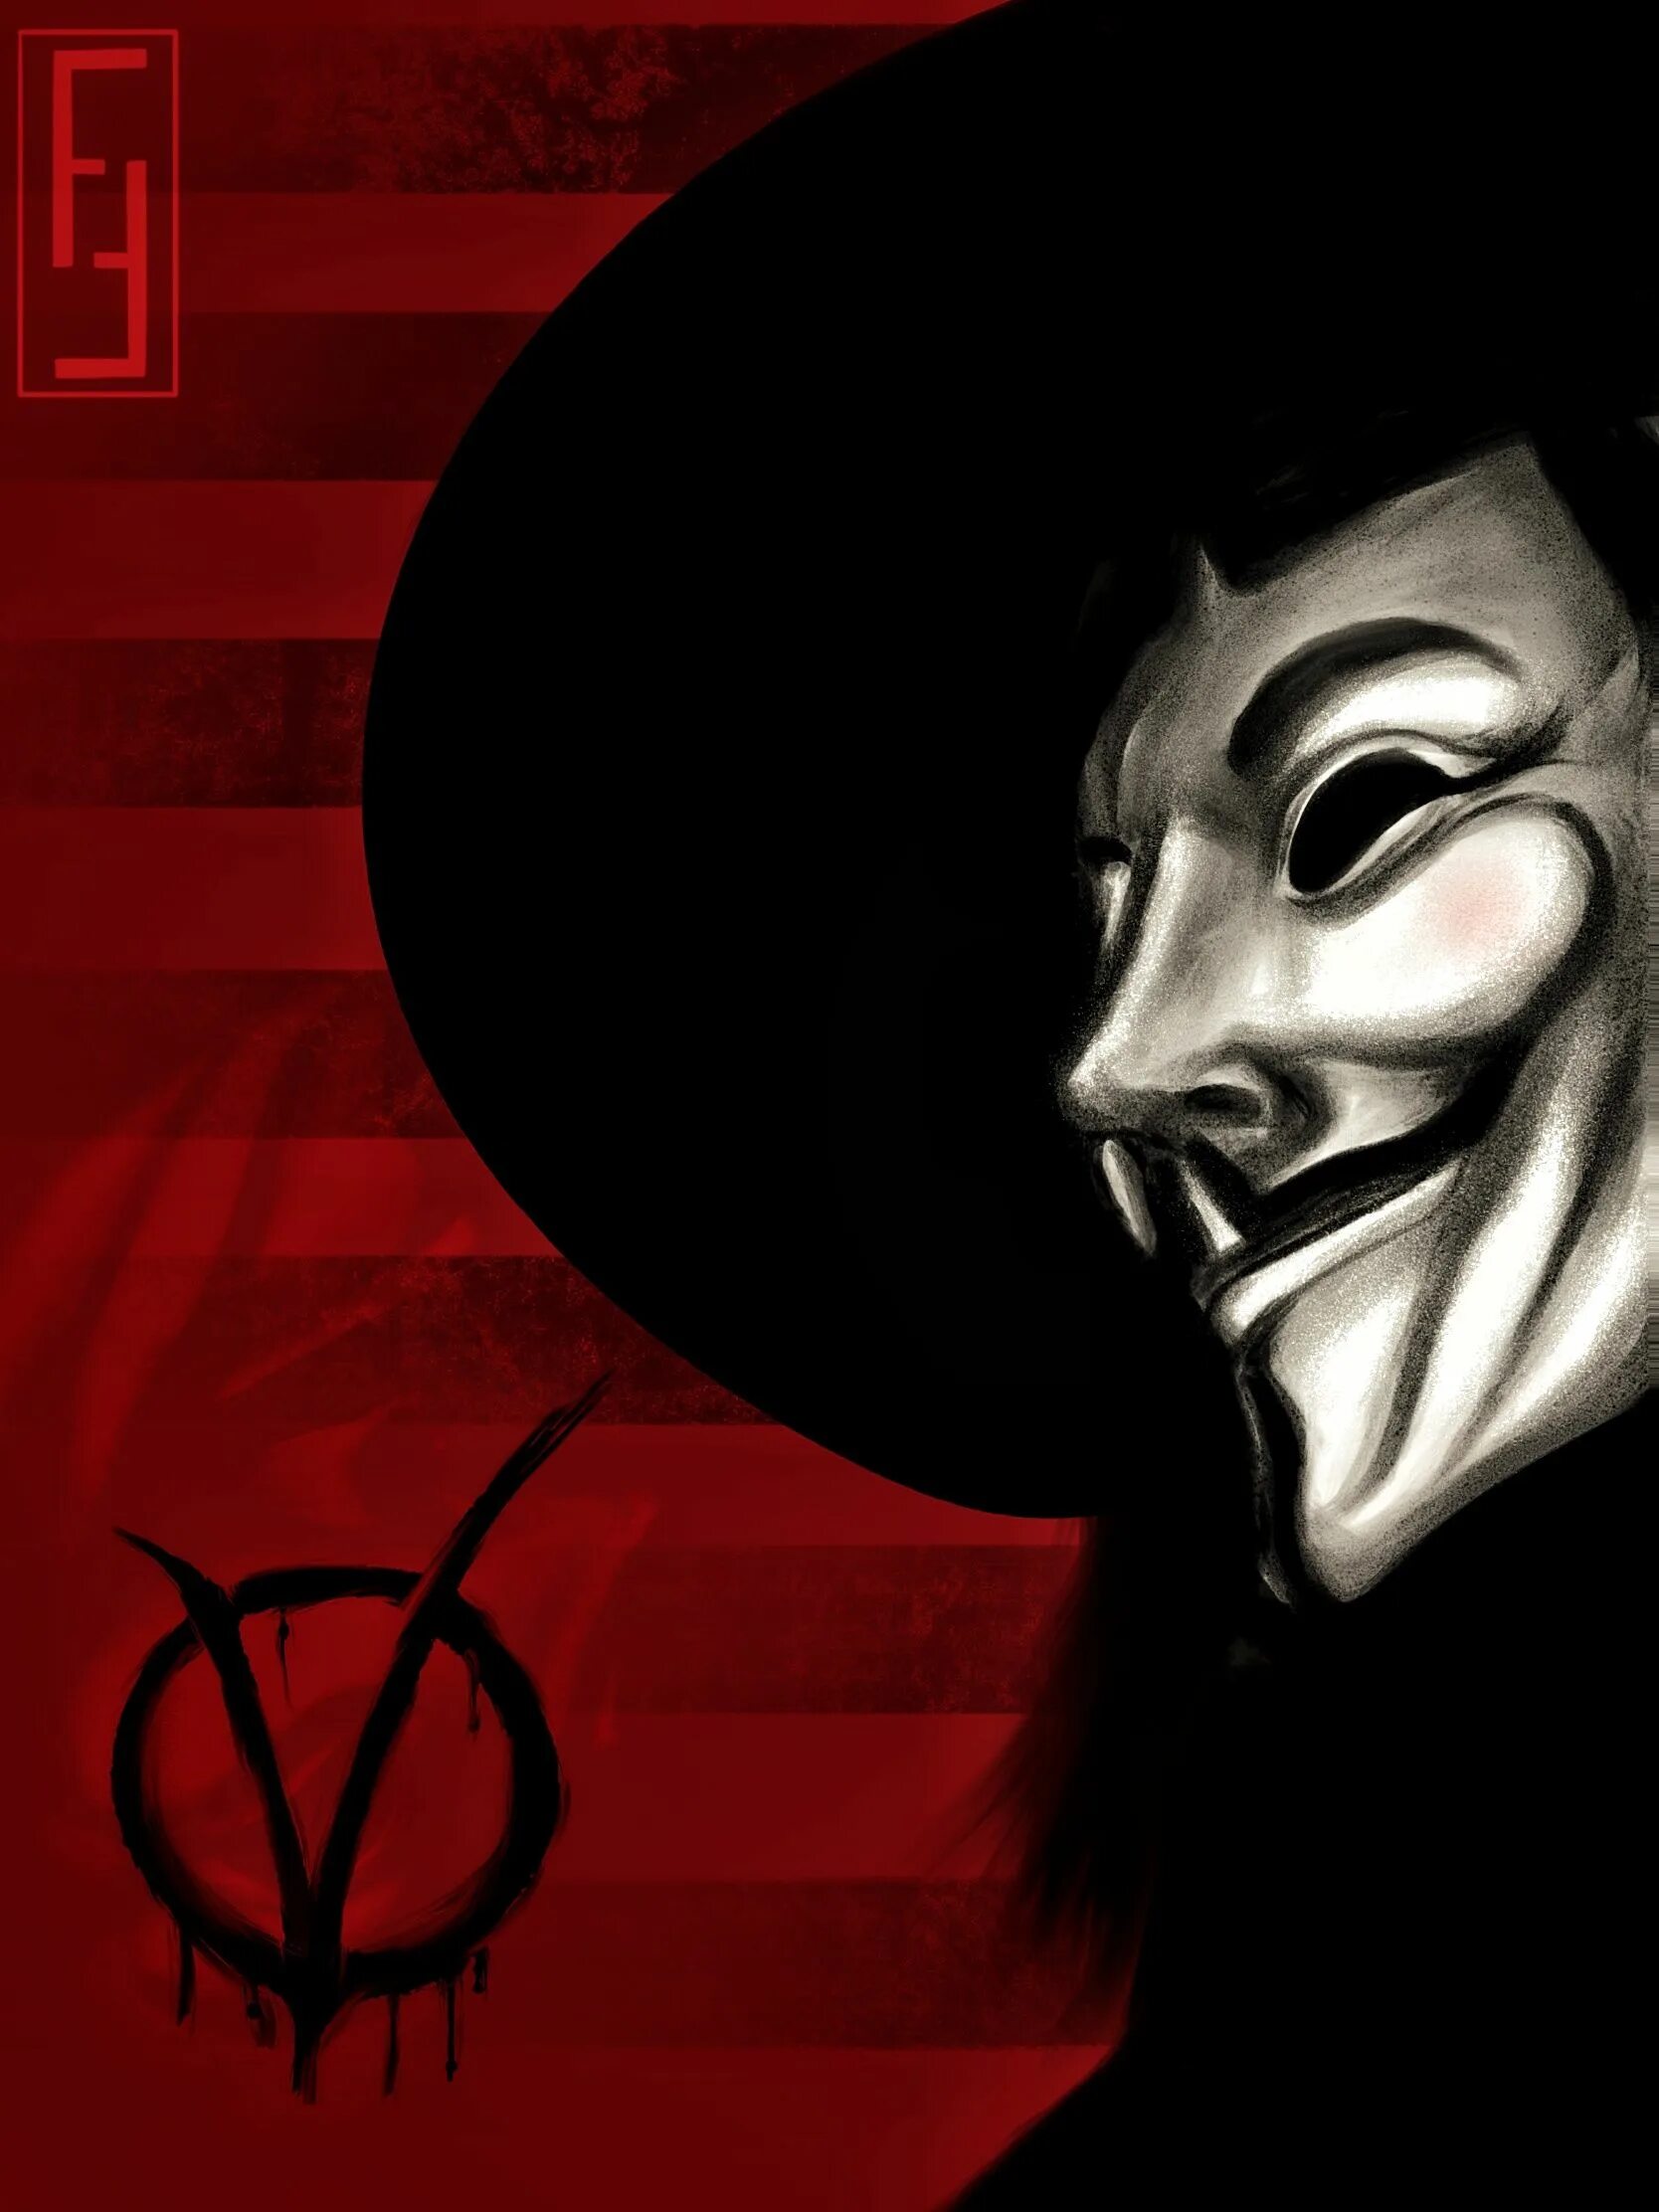 История вендетты. V for Vendetta. V значит Vendetta. Вендетта 2011г.